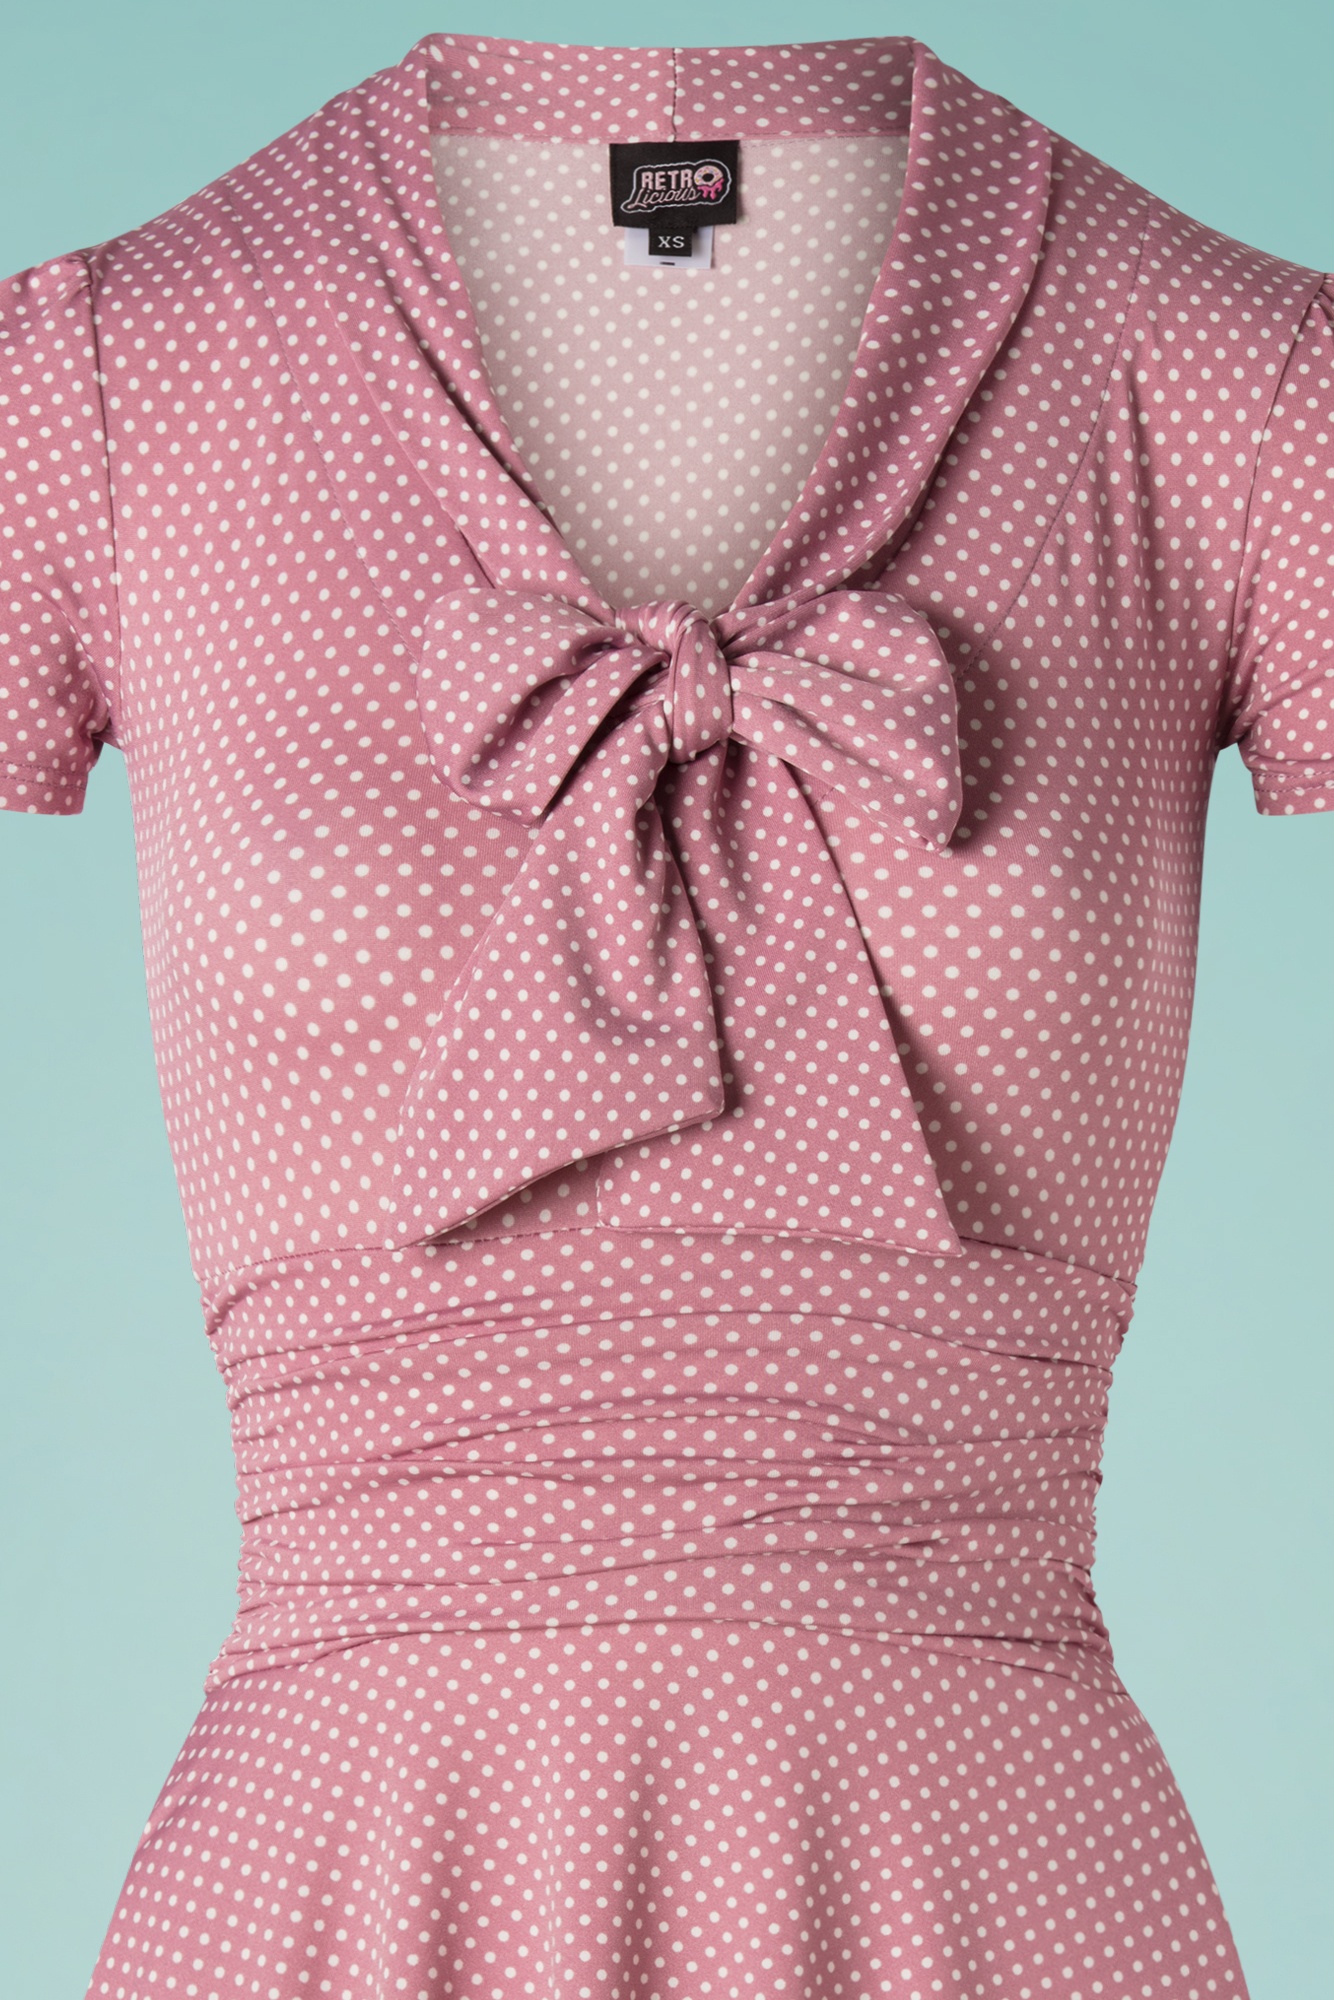 Retrolicious - Debra Pin Dot Swing-jurk in lila roze 3